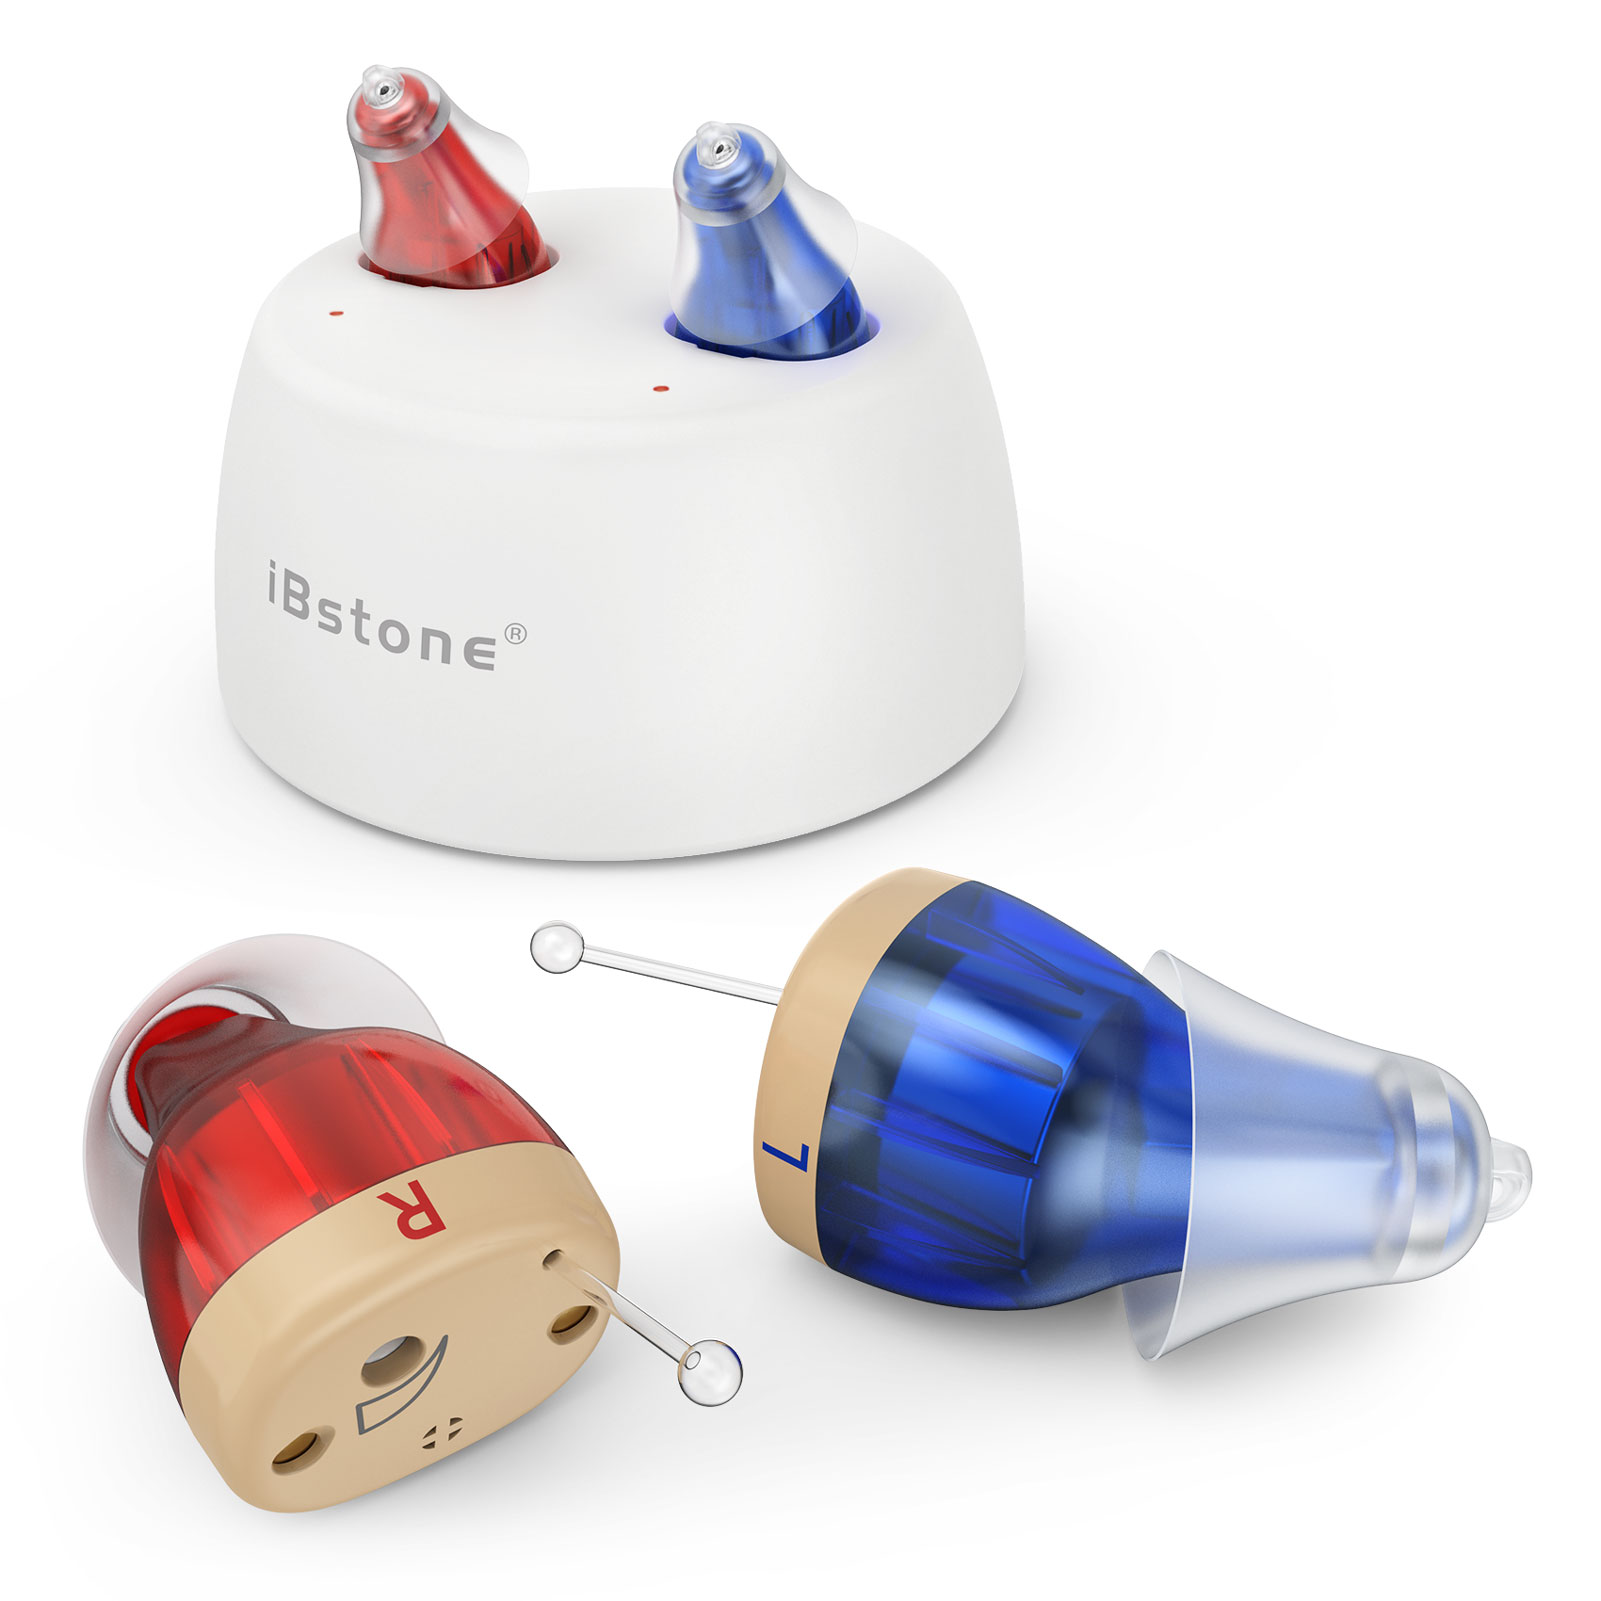 iBstone K17 hearing aids